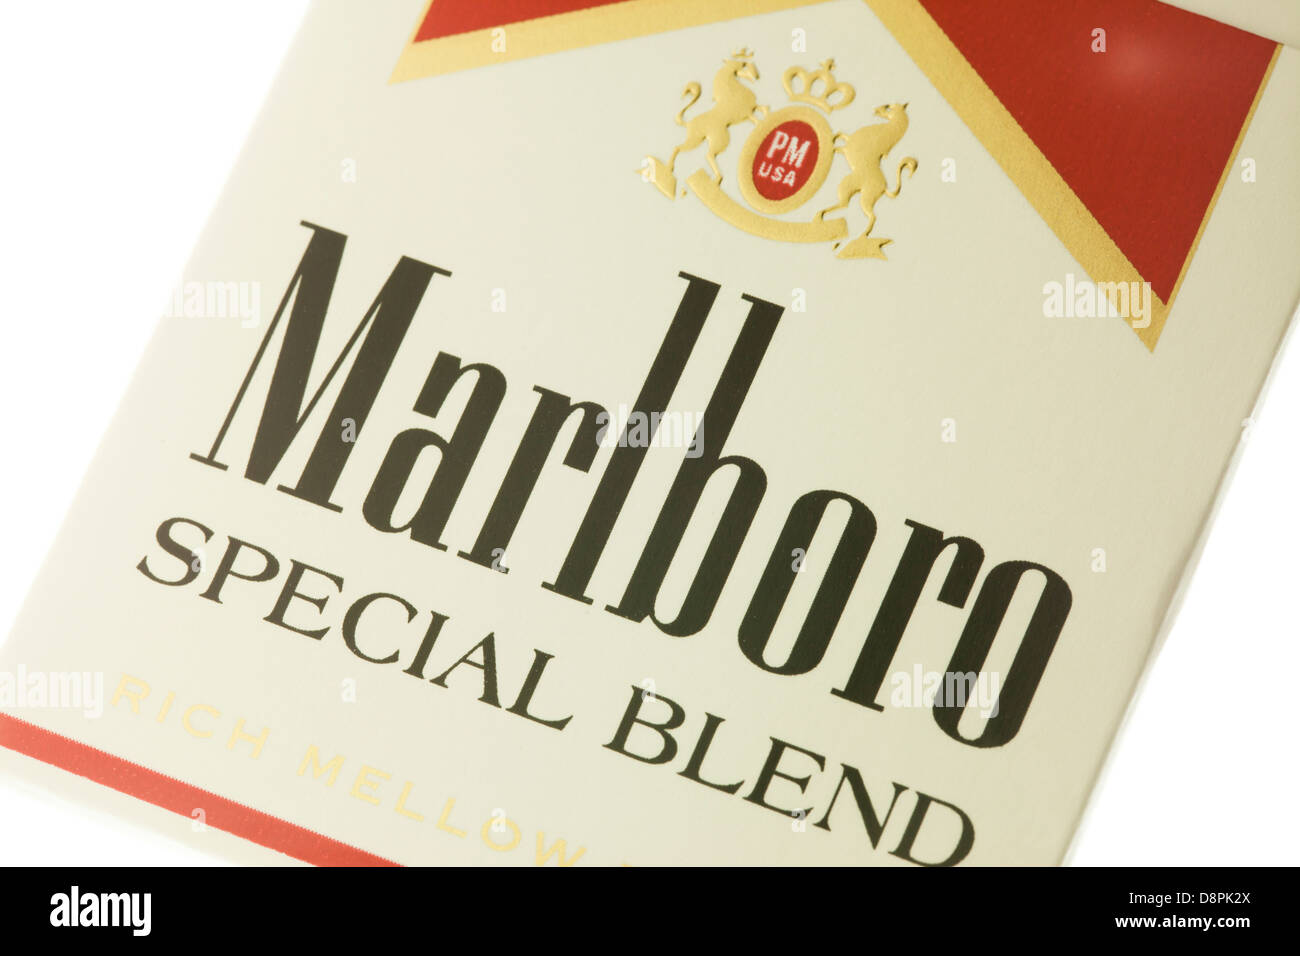 Mezcla especial de cigarrillos Marlboro box Foto de stock